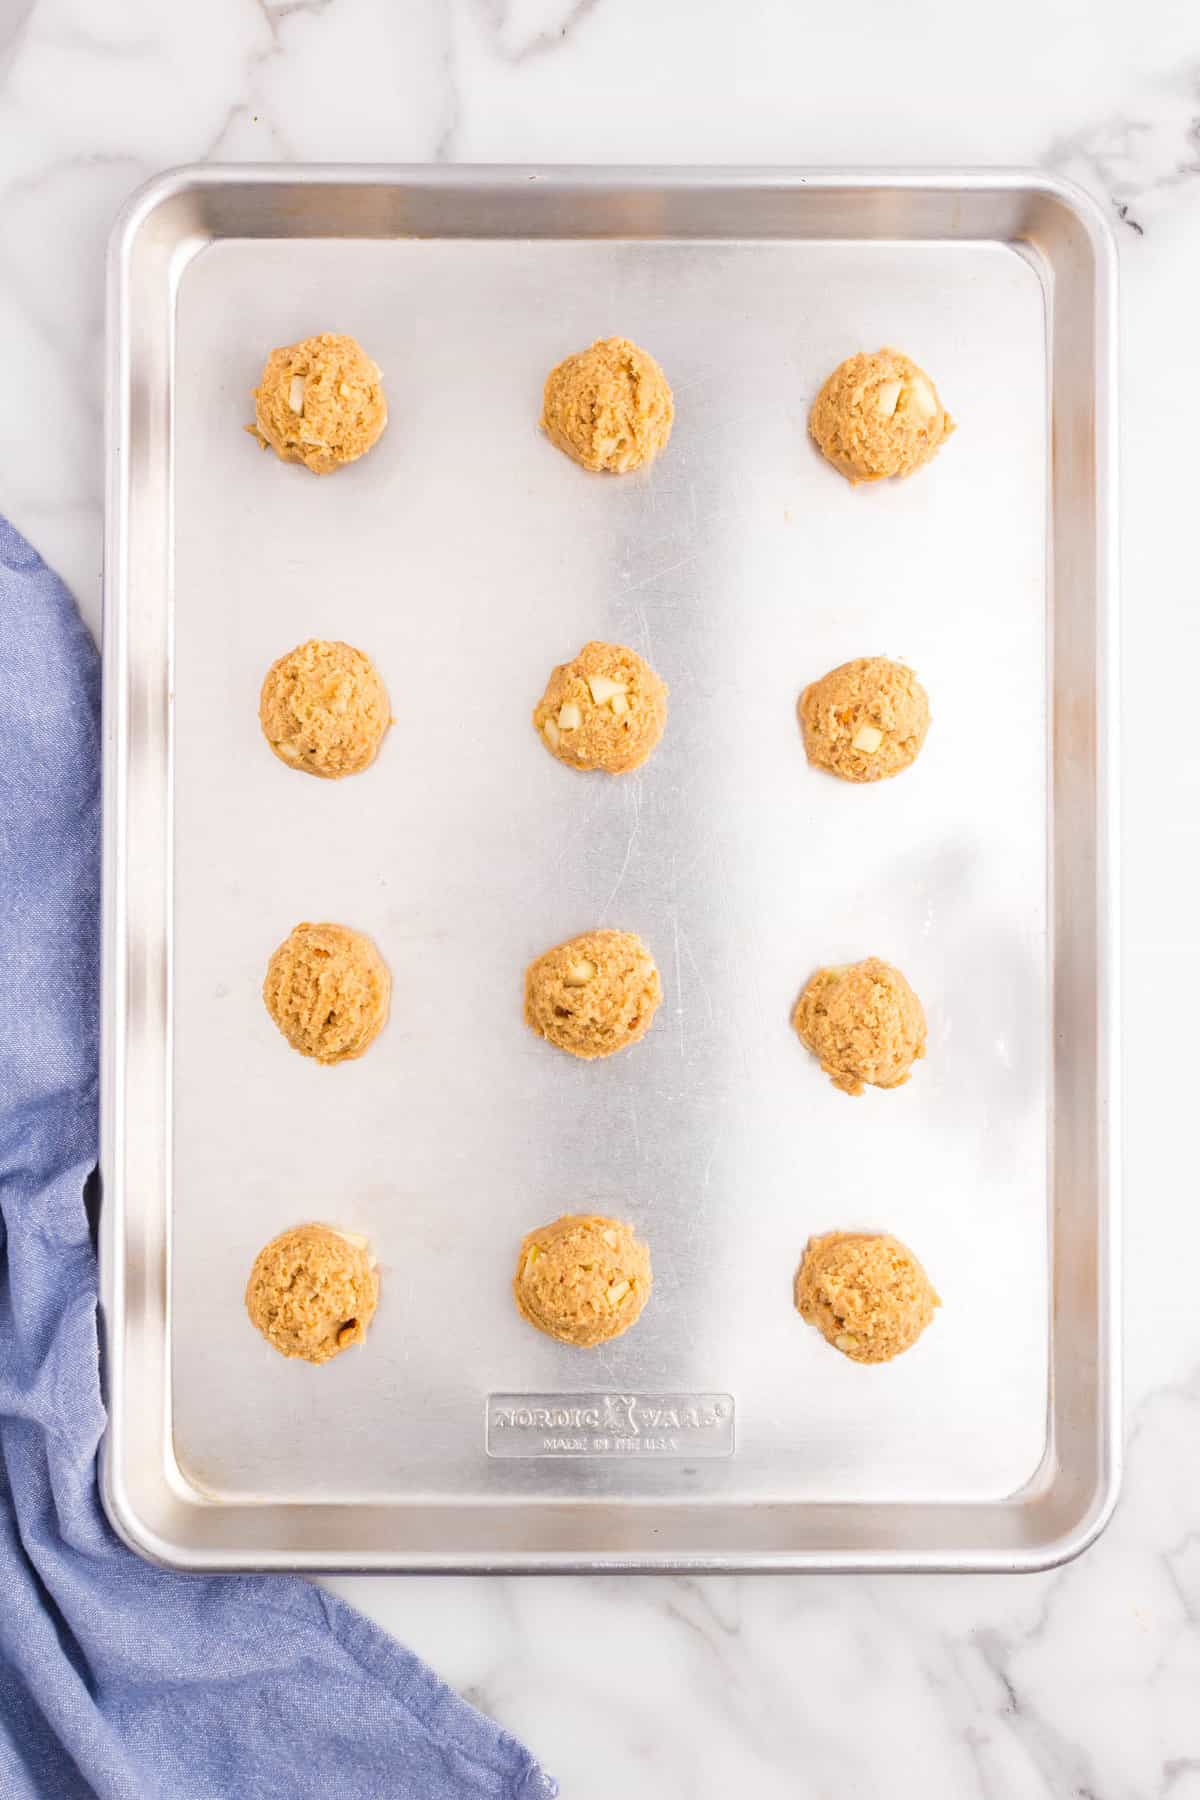 Apple Peanut Butter Cookies dough balls on baking sheet